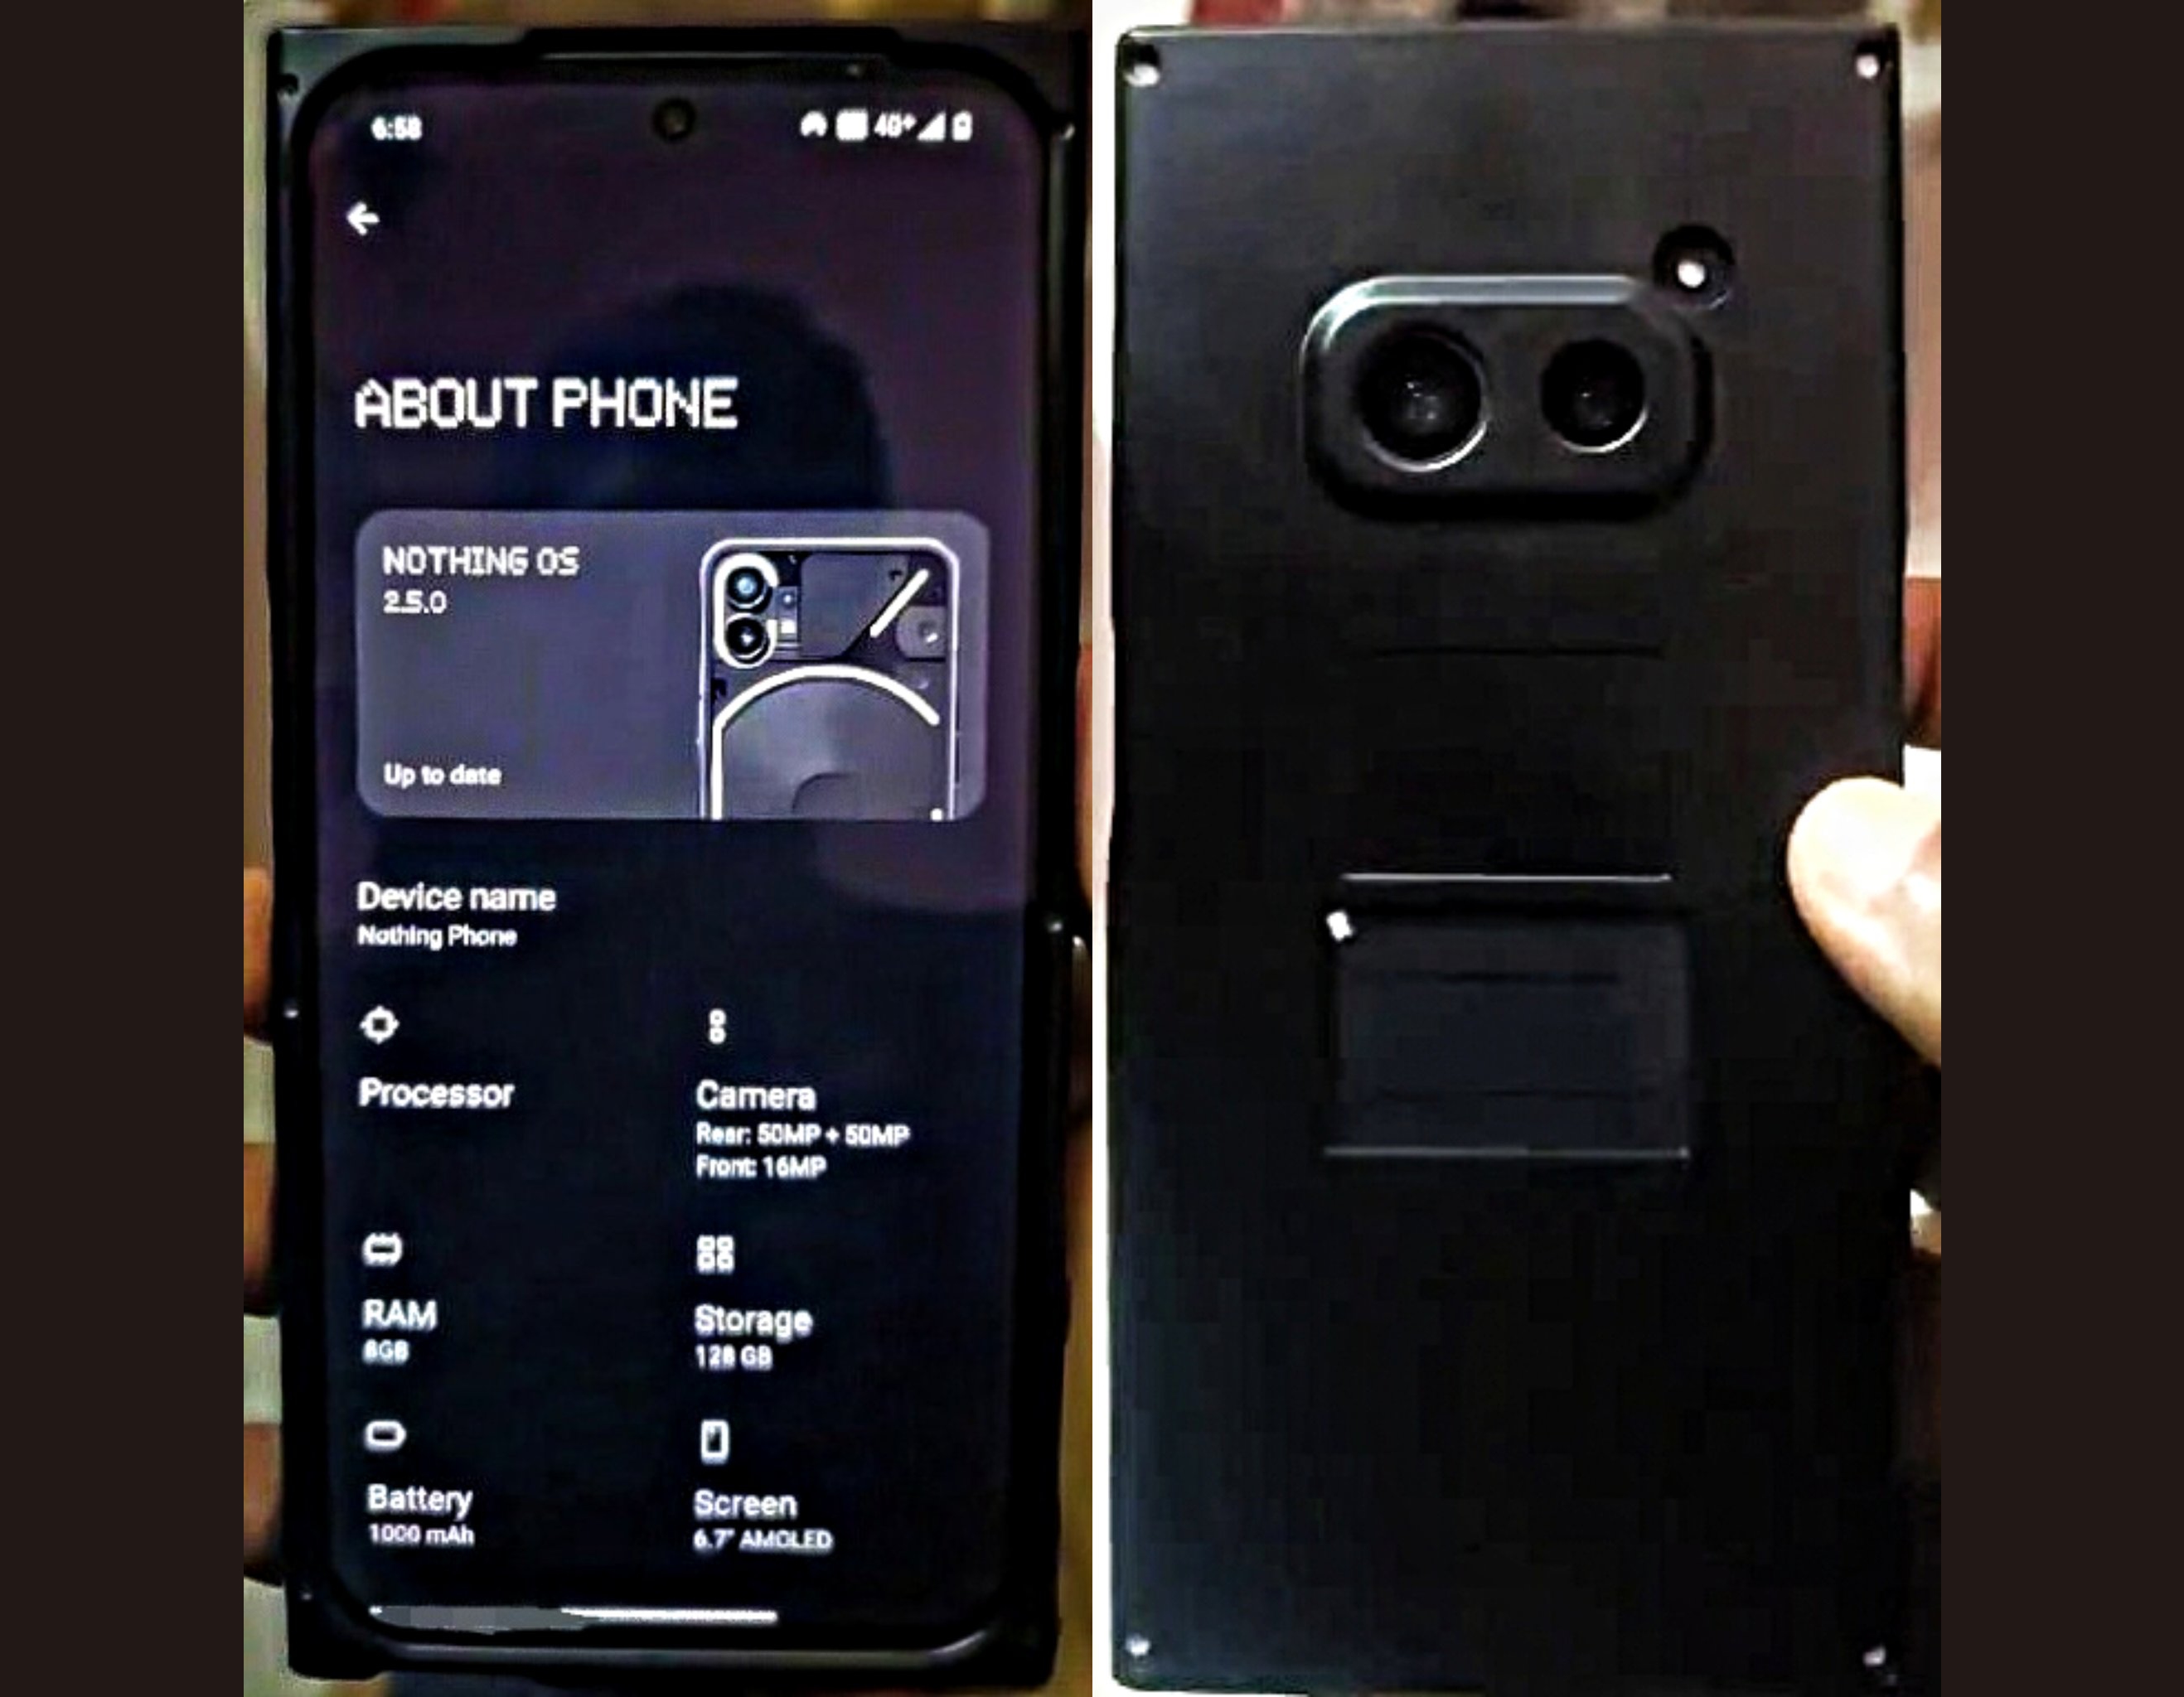 En prototyp av Nothing Phone (2a) med dubbelkamera och AMOLED-skärm har dykt upp på bild